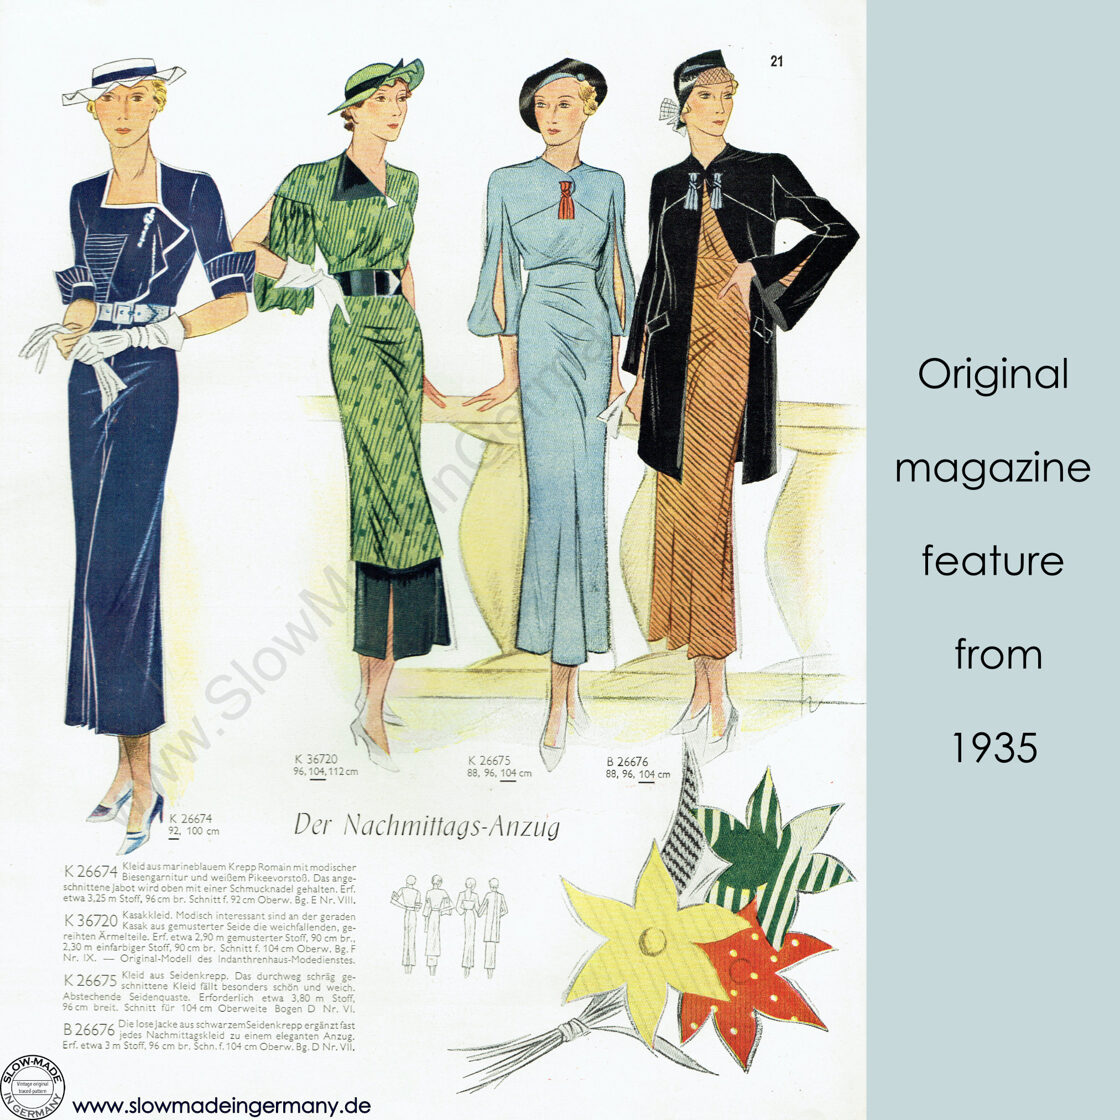 1935 Dress pattern in 104 cm/ 41" bust